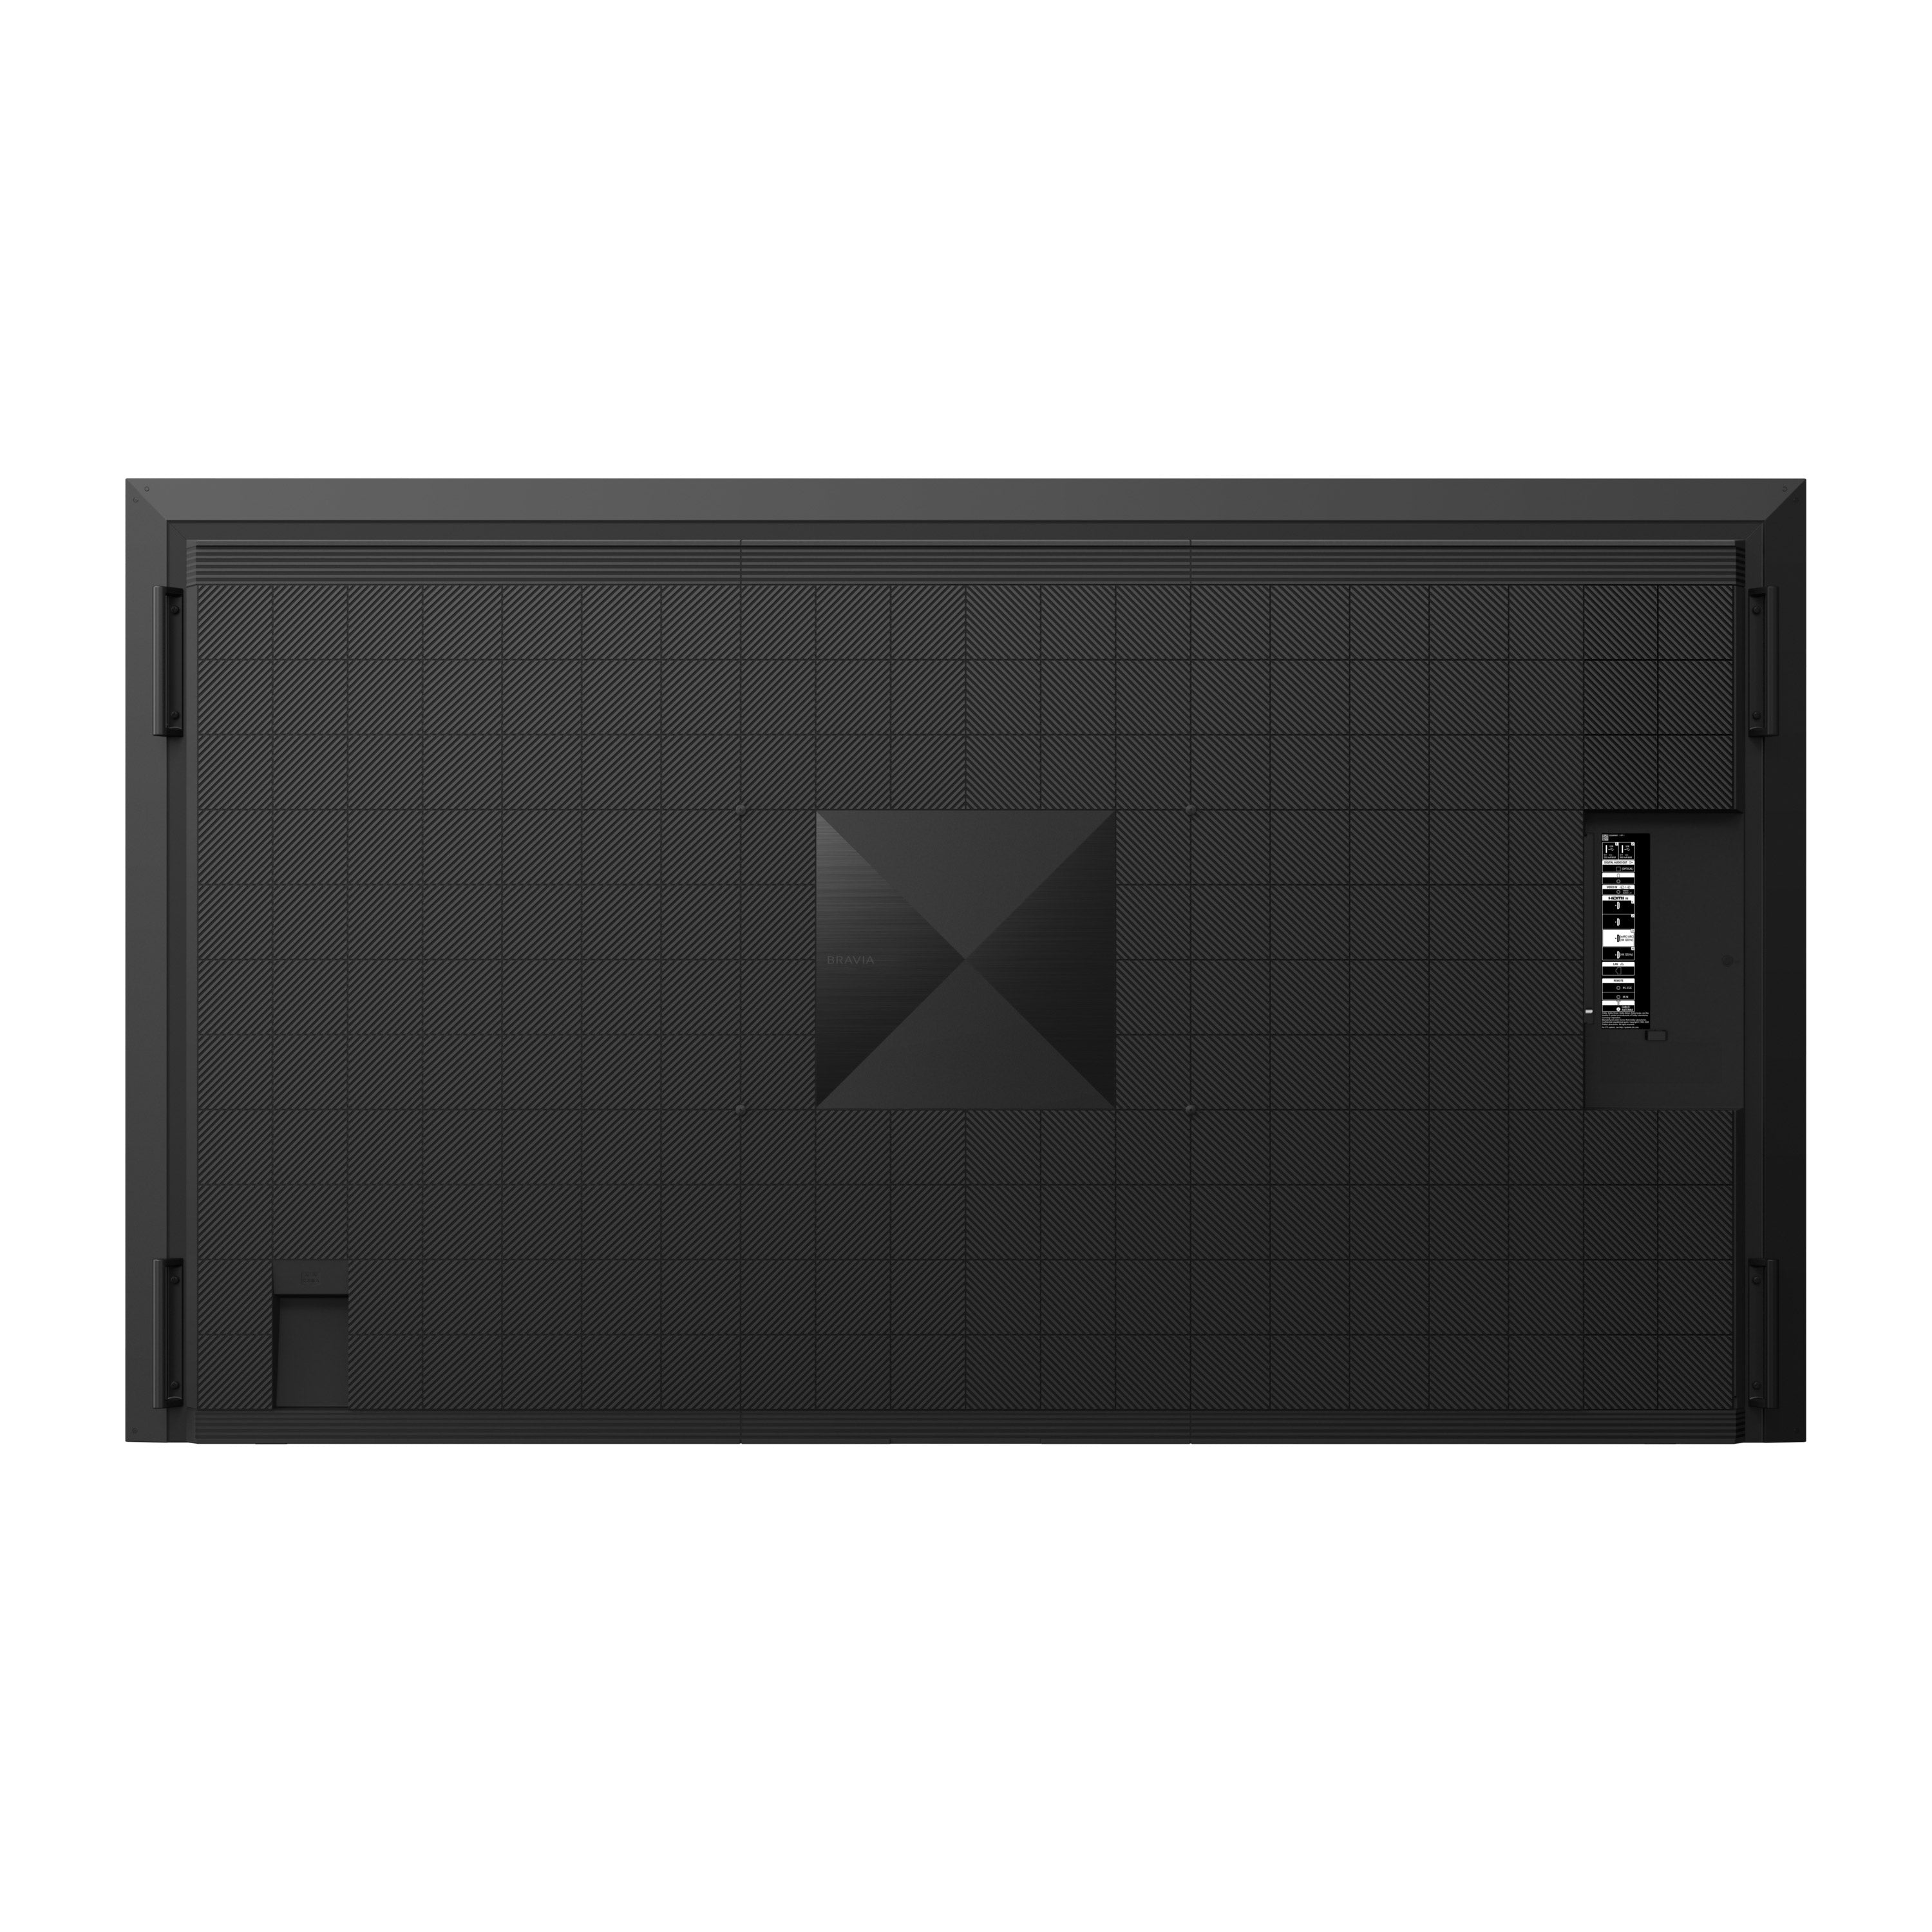 X92 100" BRAVIA XR | Full Array LED | 4K Ultra HD | High Dynamic Range (HDR) | Smart TV (Google TV)